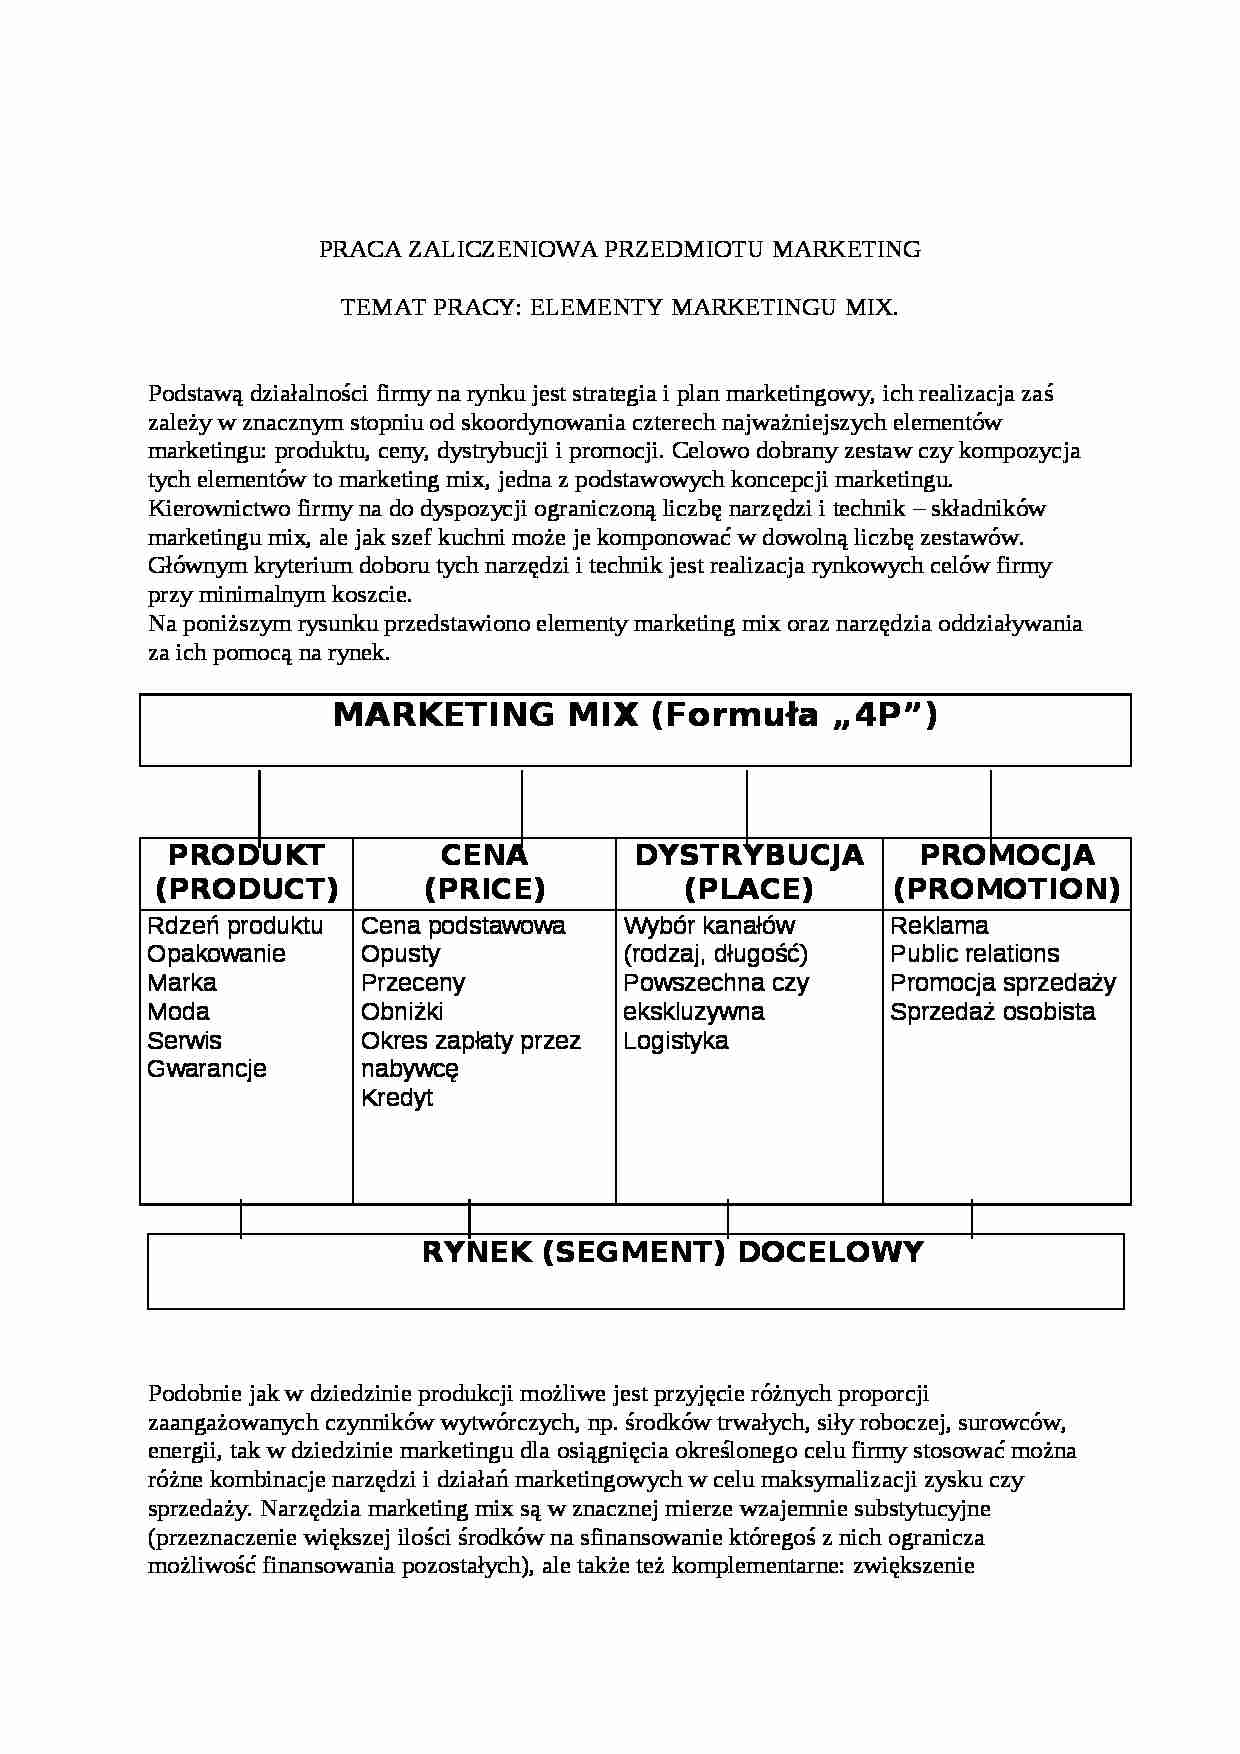 elementy marketingu mix - praca zaliczeniowa - strona 1